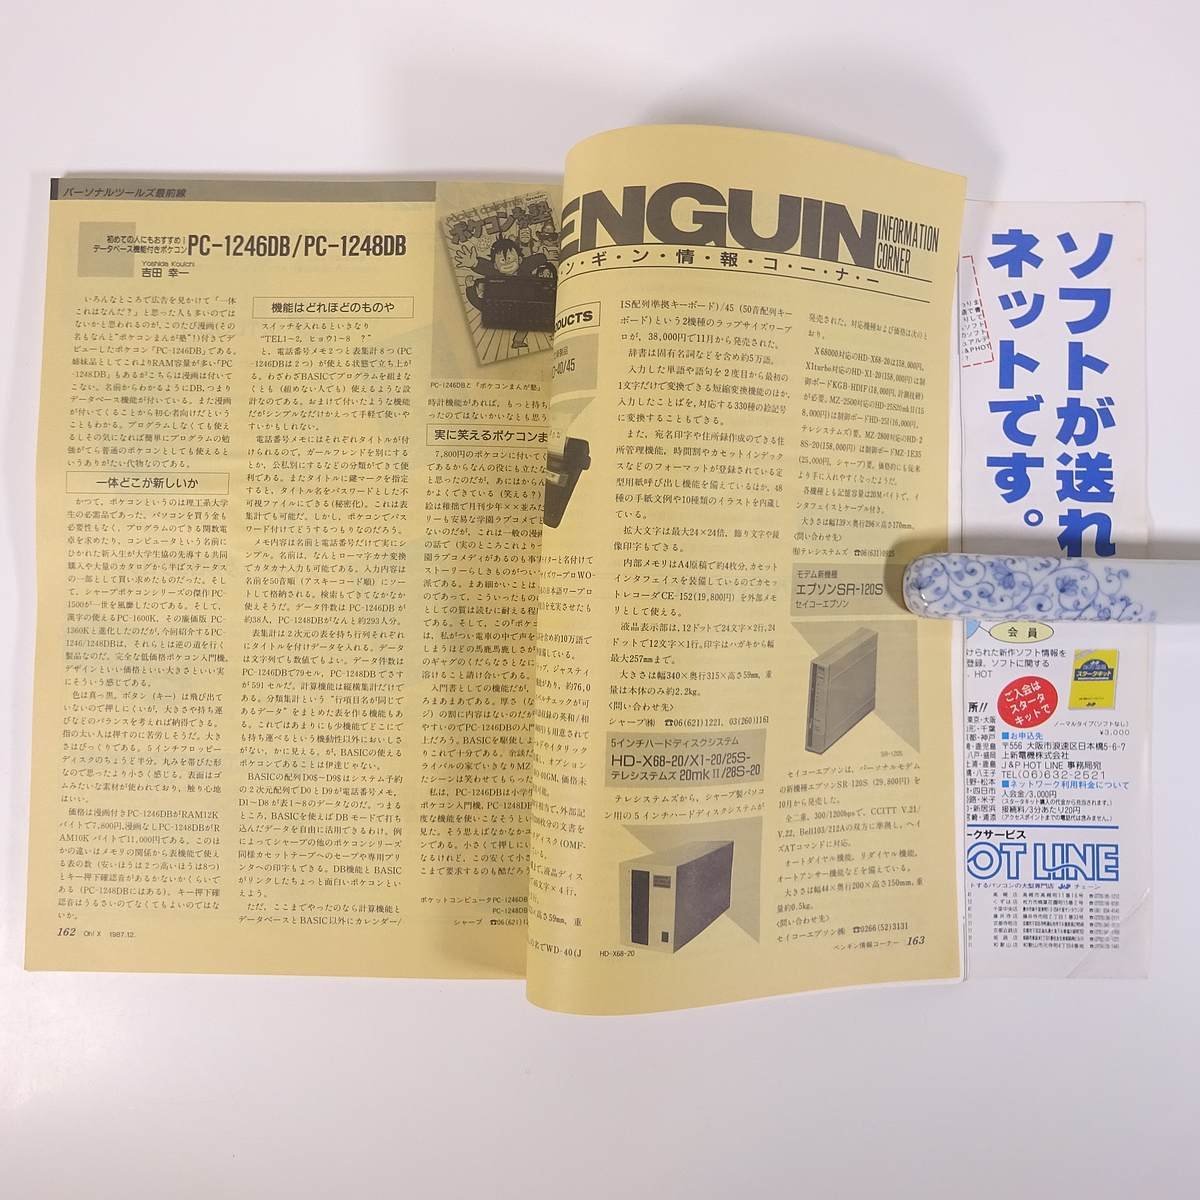 Oh!Xo-! X No.68 1987/12 Япония SoftBank журнал PC компьютернные игры MZ X1 X68000 карманный компьютер специальный выпуск * подлинный. Oh!CZ SPECIAL